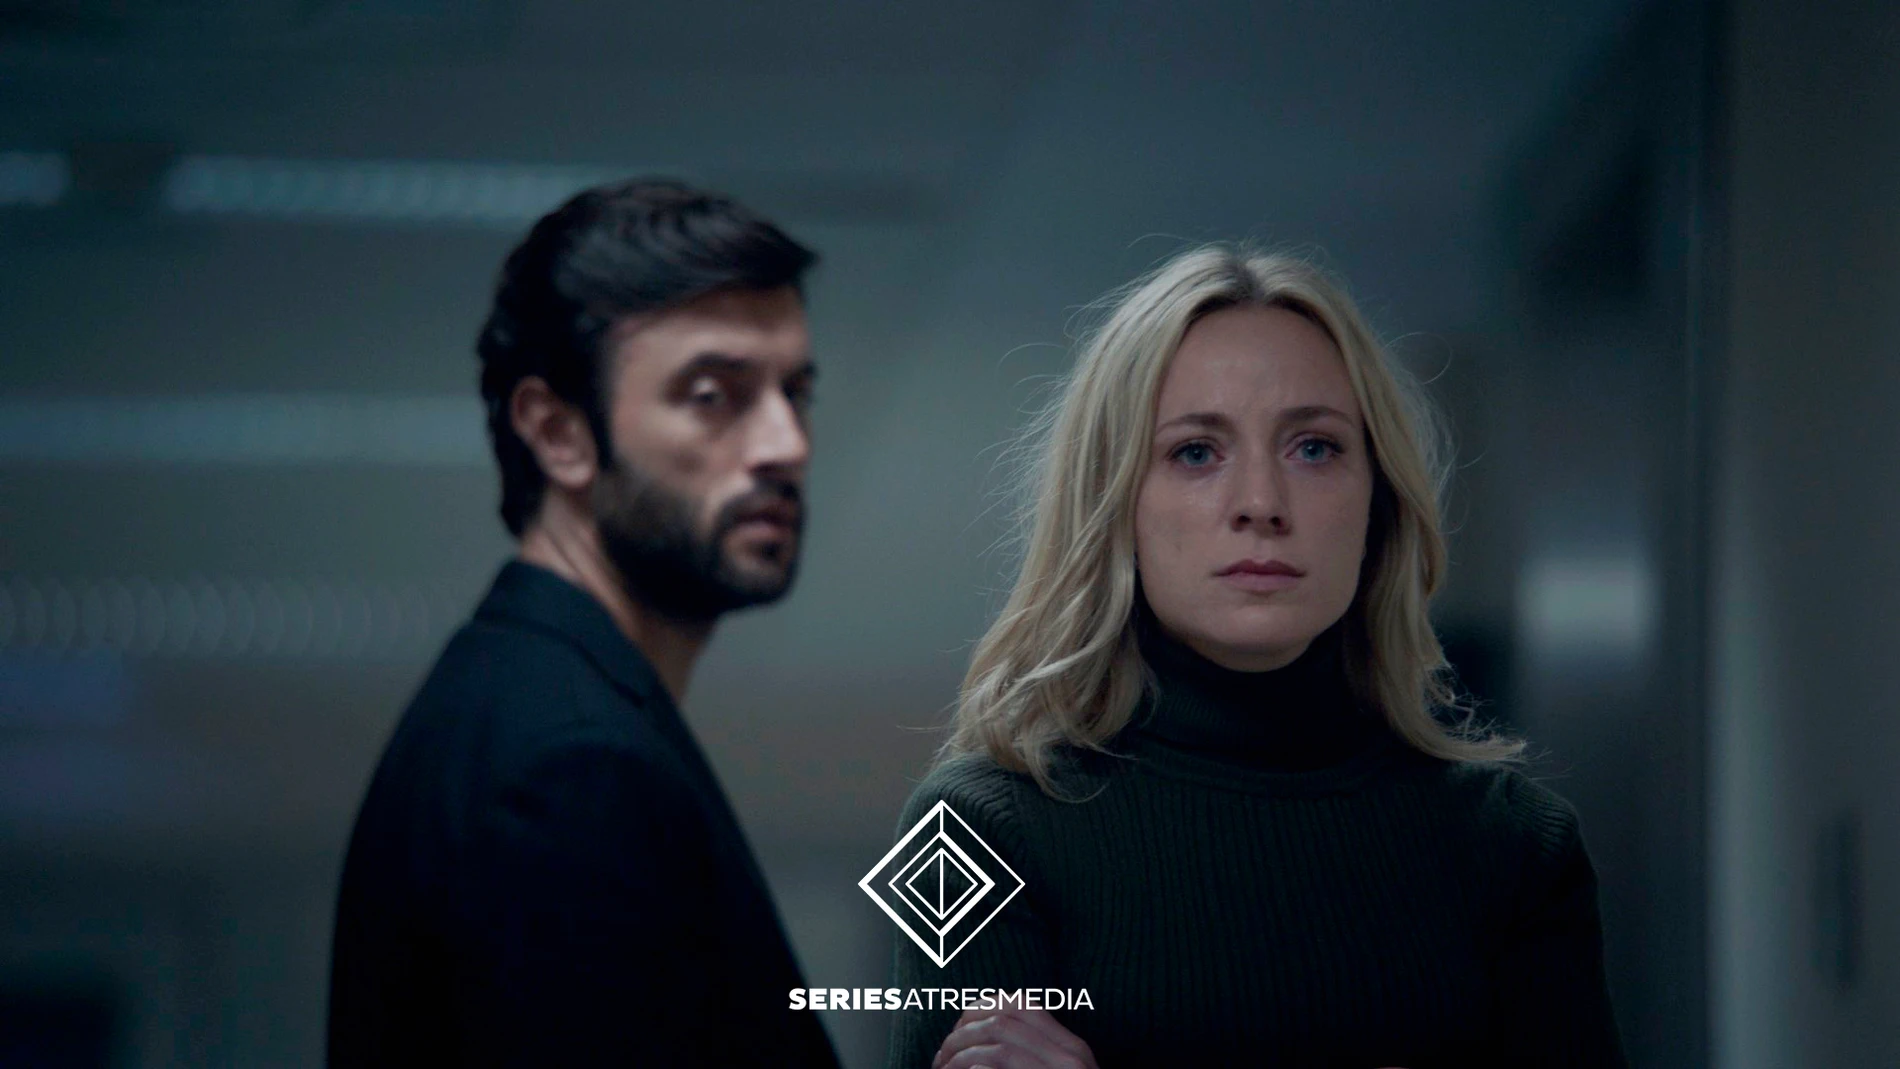 'Mentiras' inicia su rodaje: reparto completo y primera imagen de la nueva serie de Antena 3